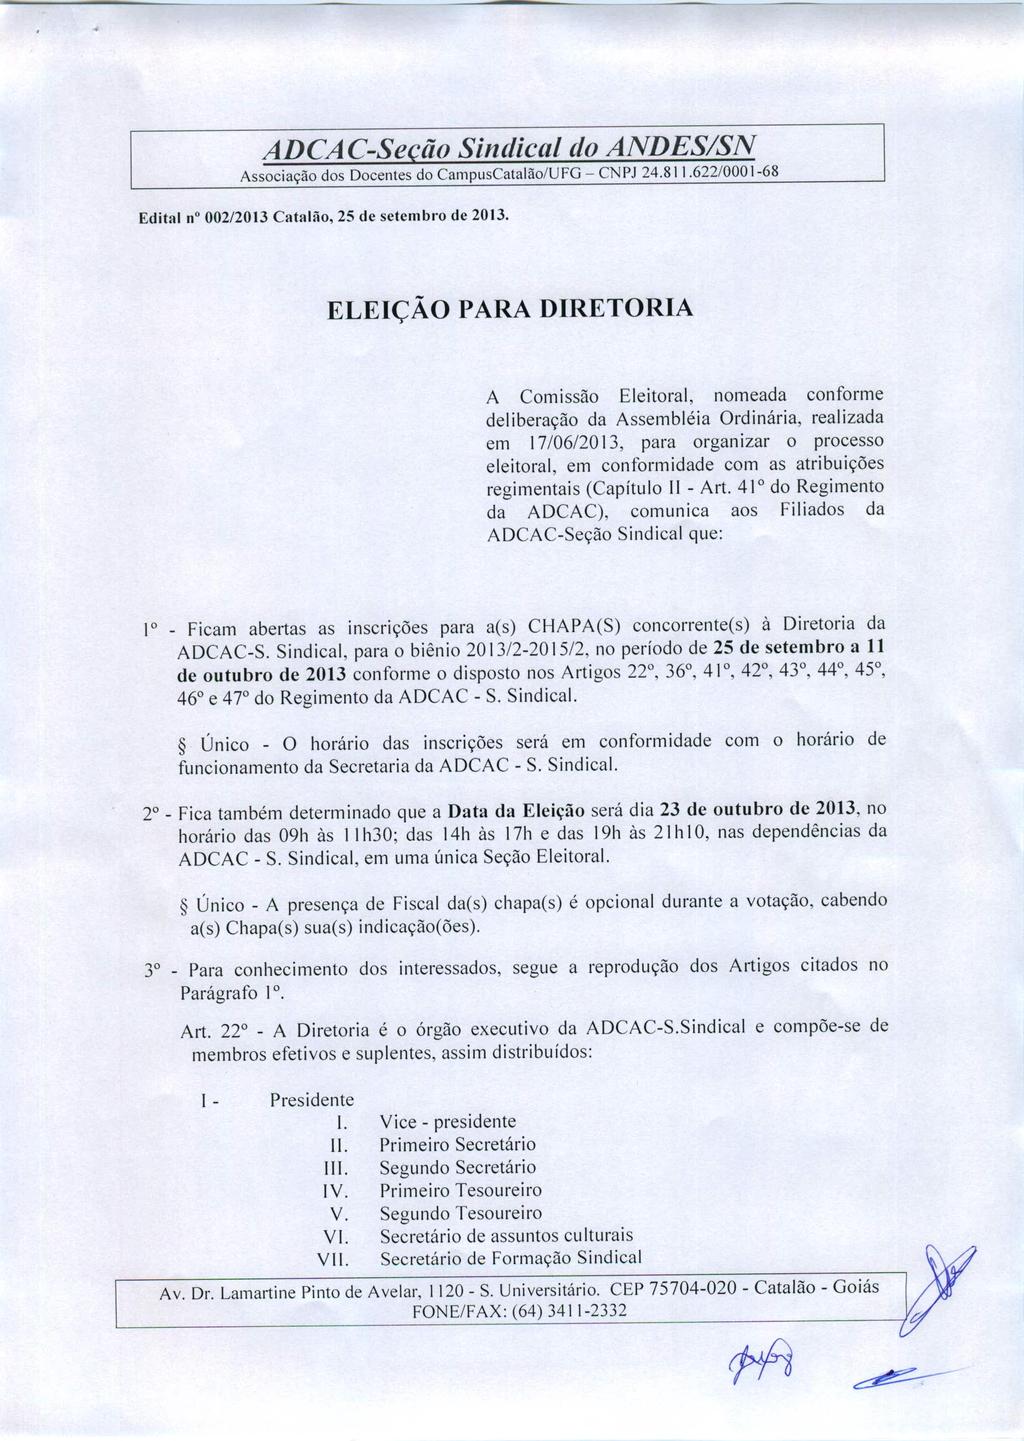 ADCAC-Seção Sindical do ANDES/SN Associação dos Docentes do CampusCatalão/UFG - CNPJ 24.811.622/0001-68 Edital n 002/2013 Catalão, 25 de sctcmbro dc 2013.